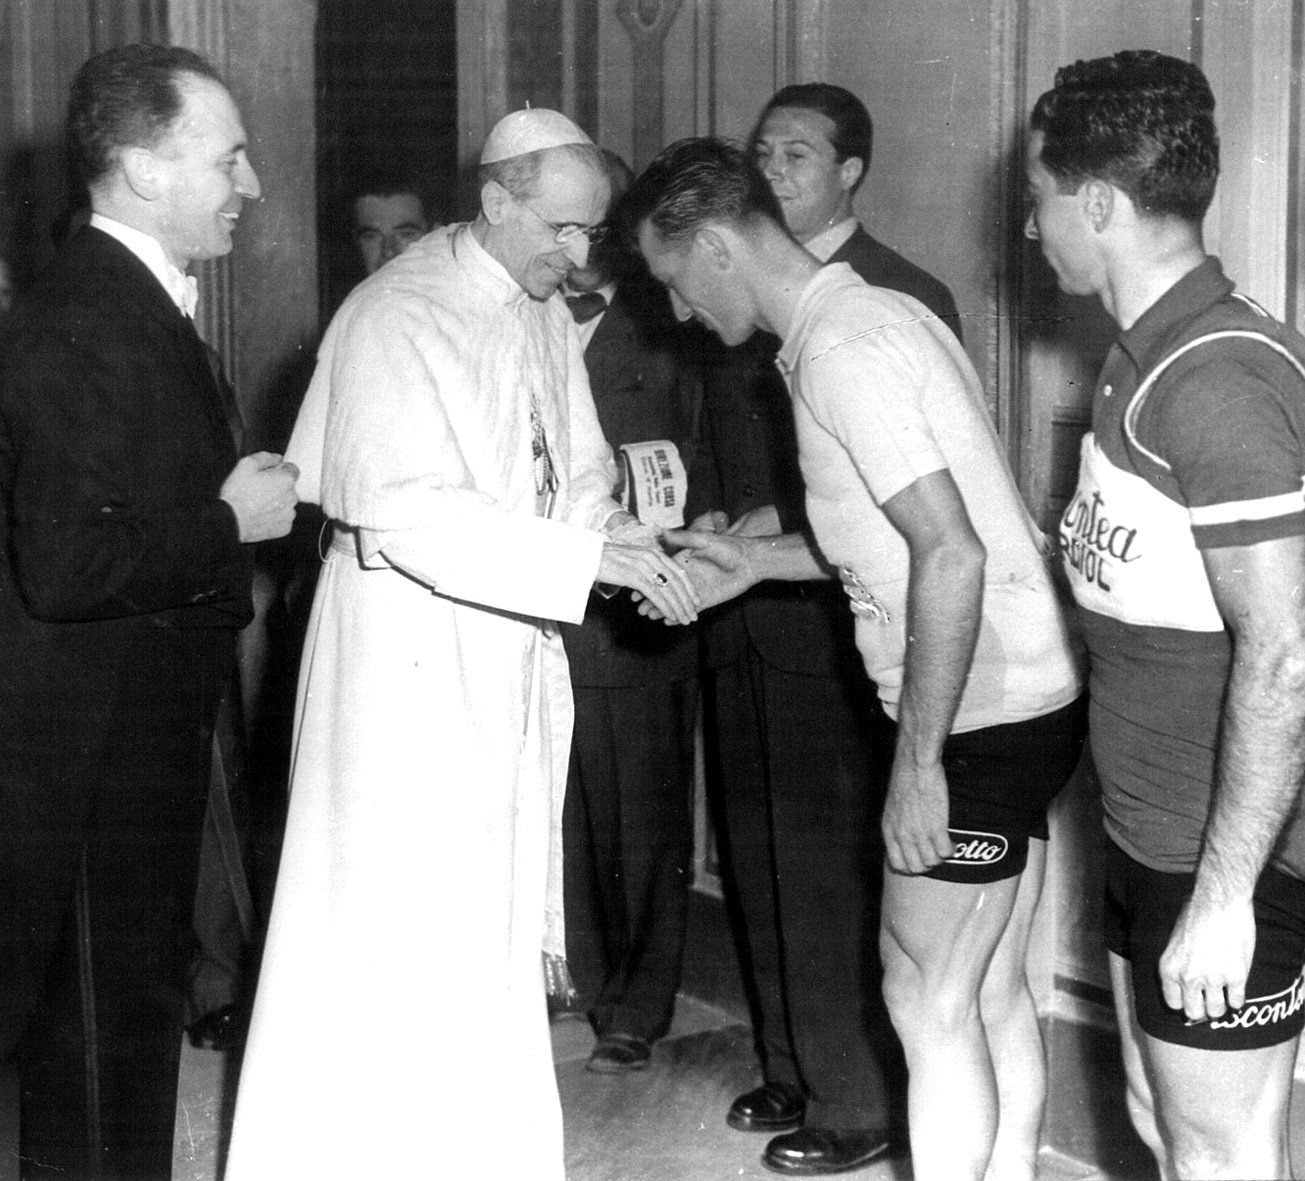 Foto d'epoca in bianco e nero. Al centro il papa vestito di bianco che stringe la mano a una persona vestita con pantaloncini corti e maglietta. Attorno, altre persone 